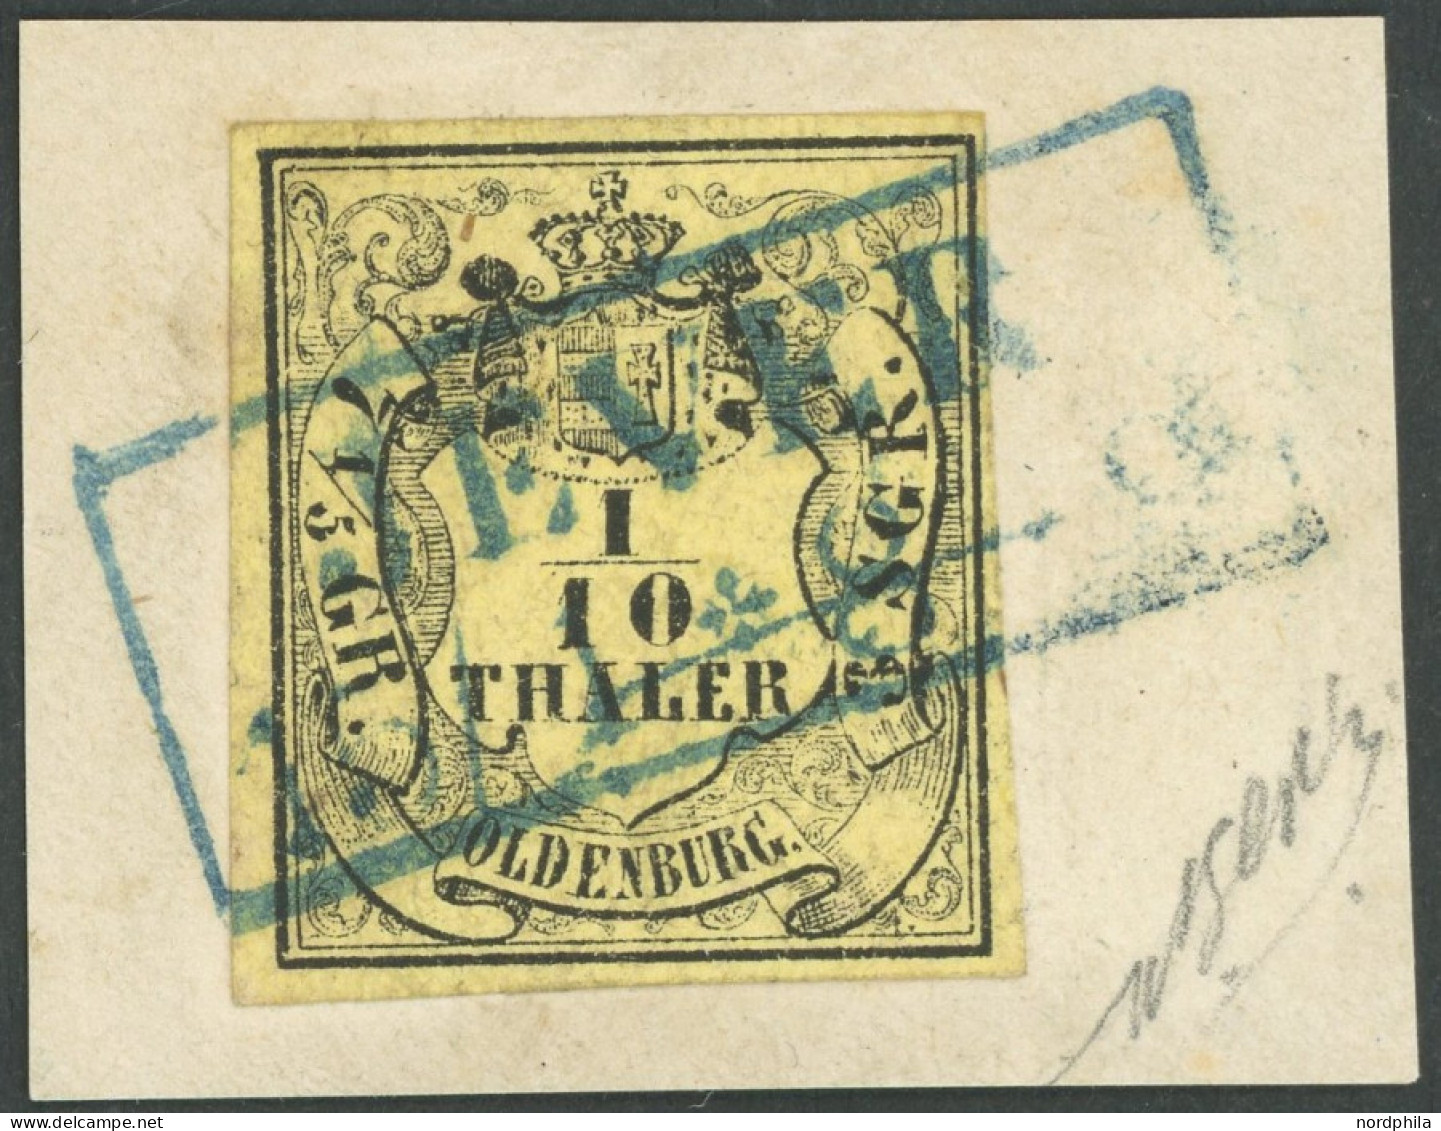 OLDENBURG 4a BrfStk, 1859, 1/10 Th. Schwarz Auf Hellgelb, Blauer R2 JEVER, Kabinettbriefstück, Gepr. Pfenninger - Oldenburg